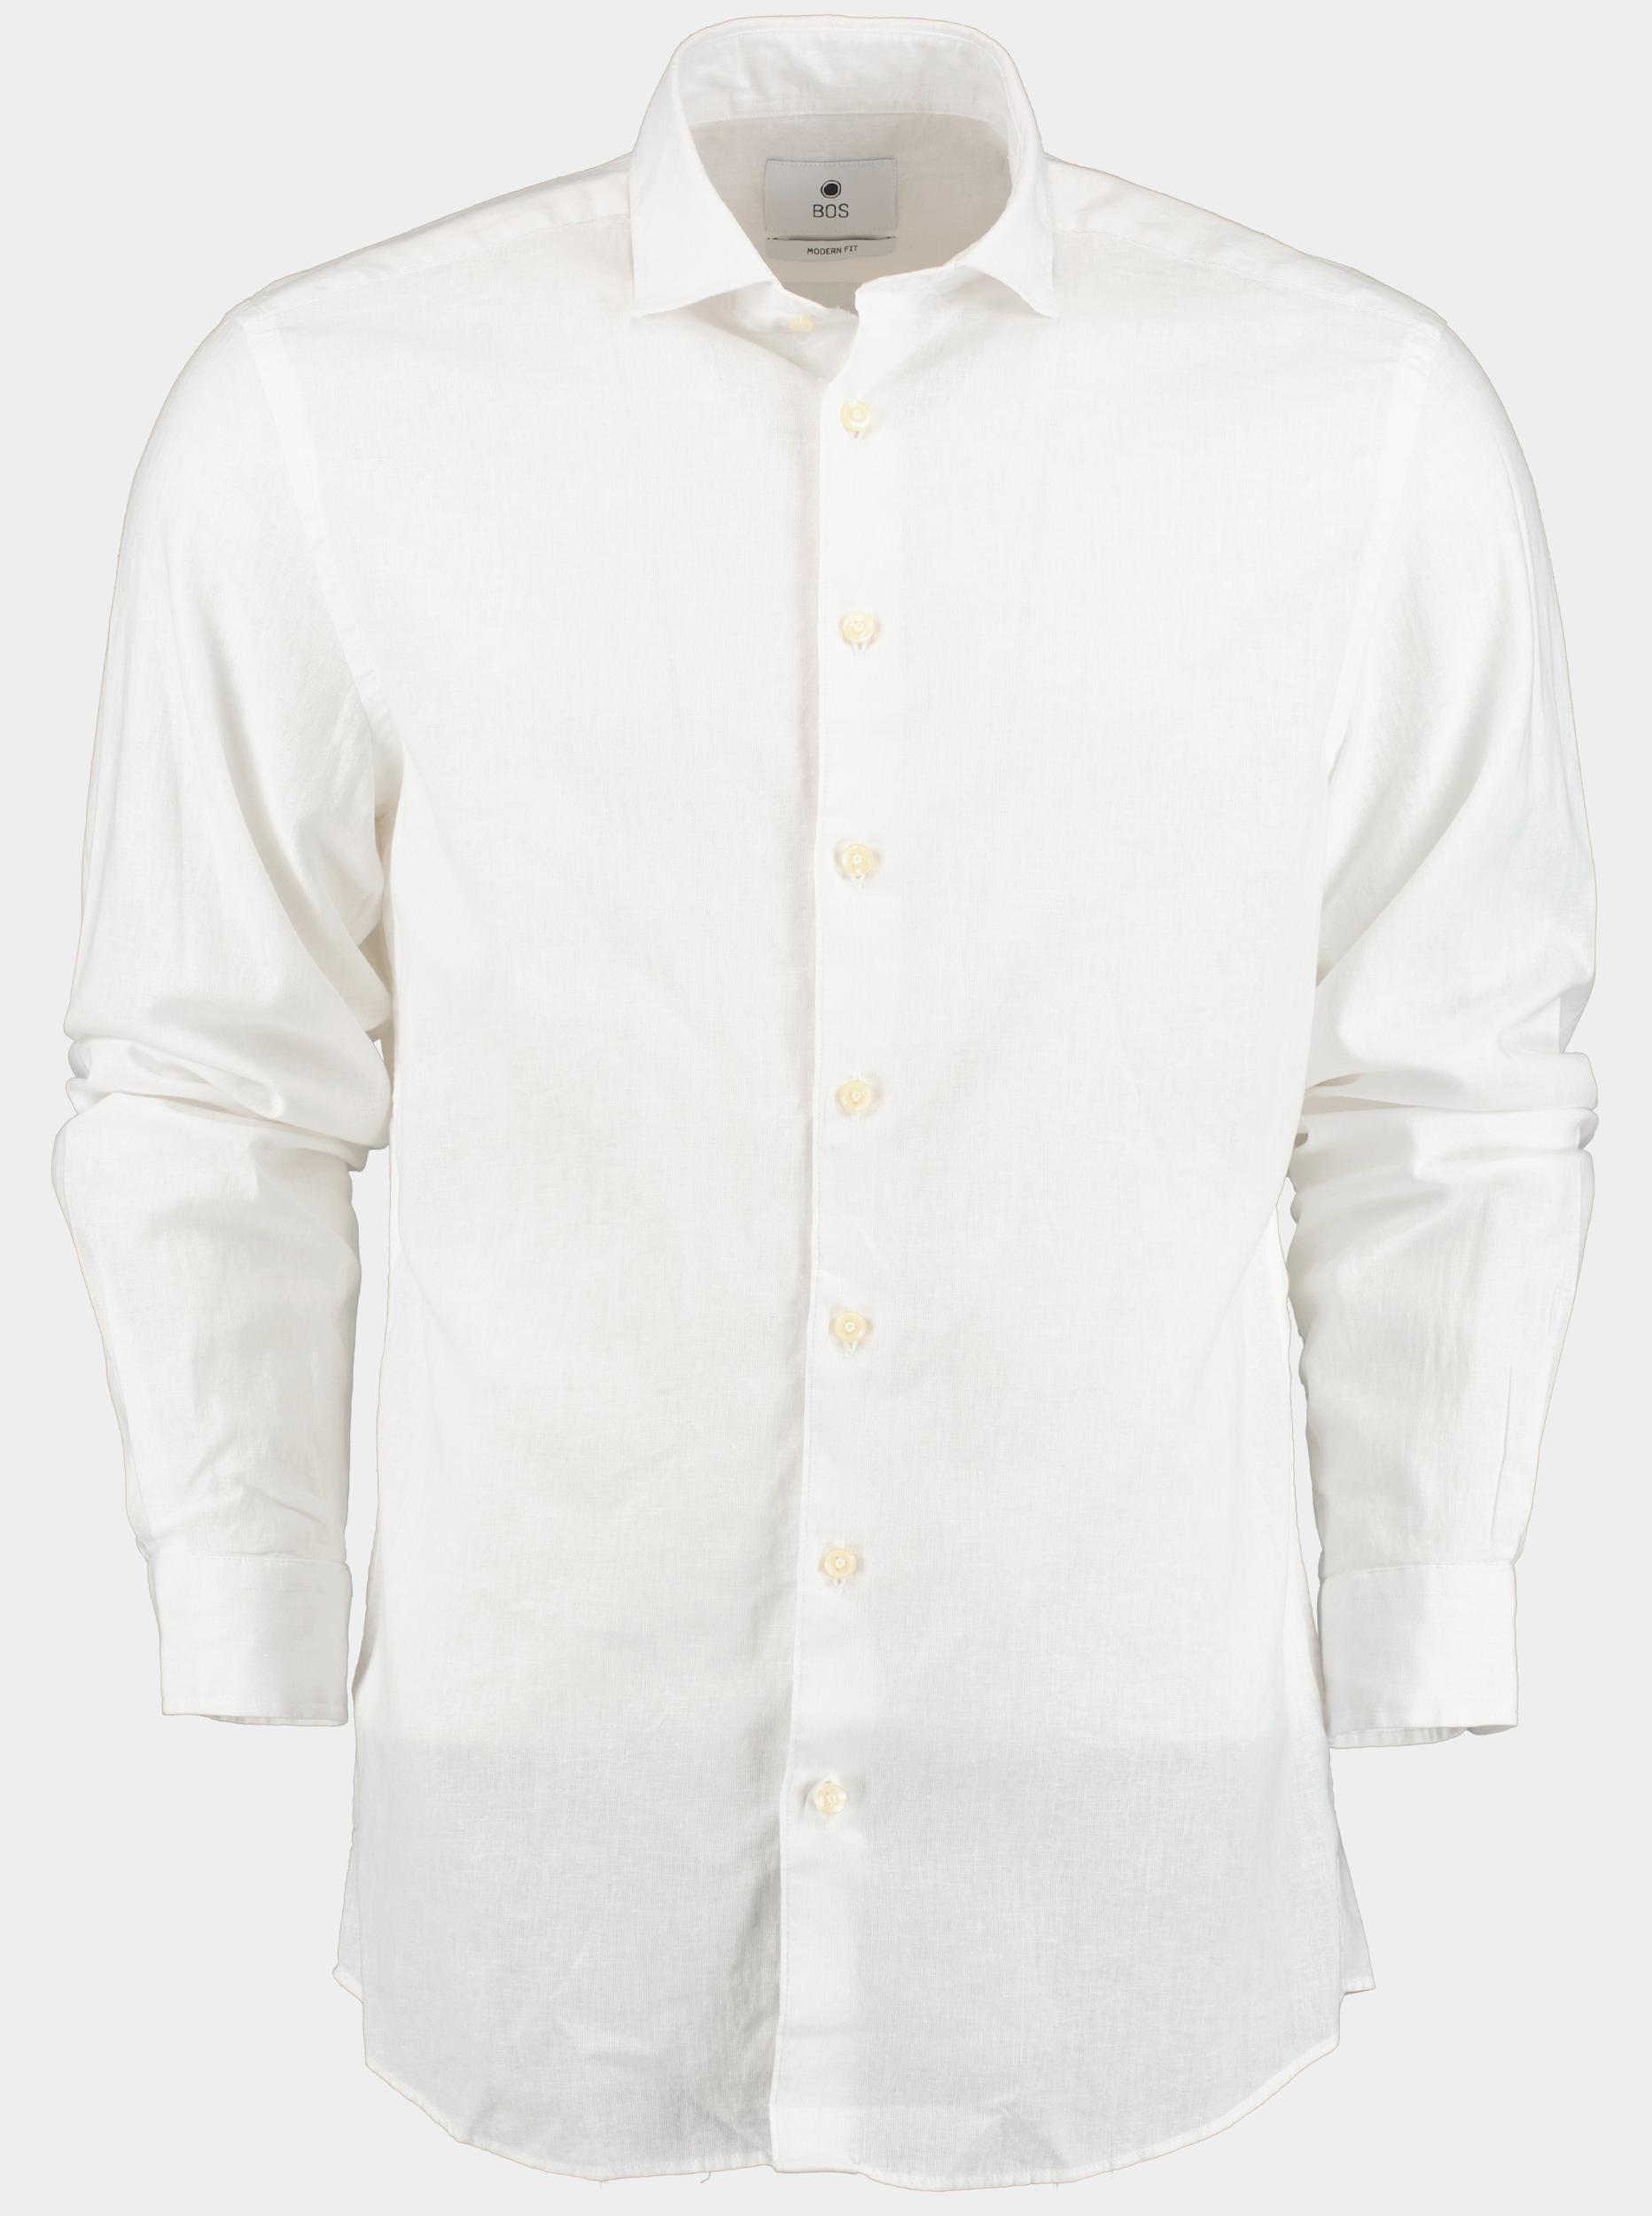 Bos Bright Blue Casual hemd lange mouw Wit Avenue Li-co Ws Plain Shirt L 24107AV01BO/100 White